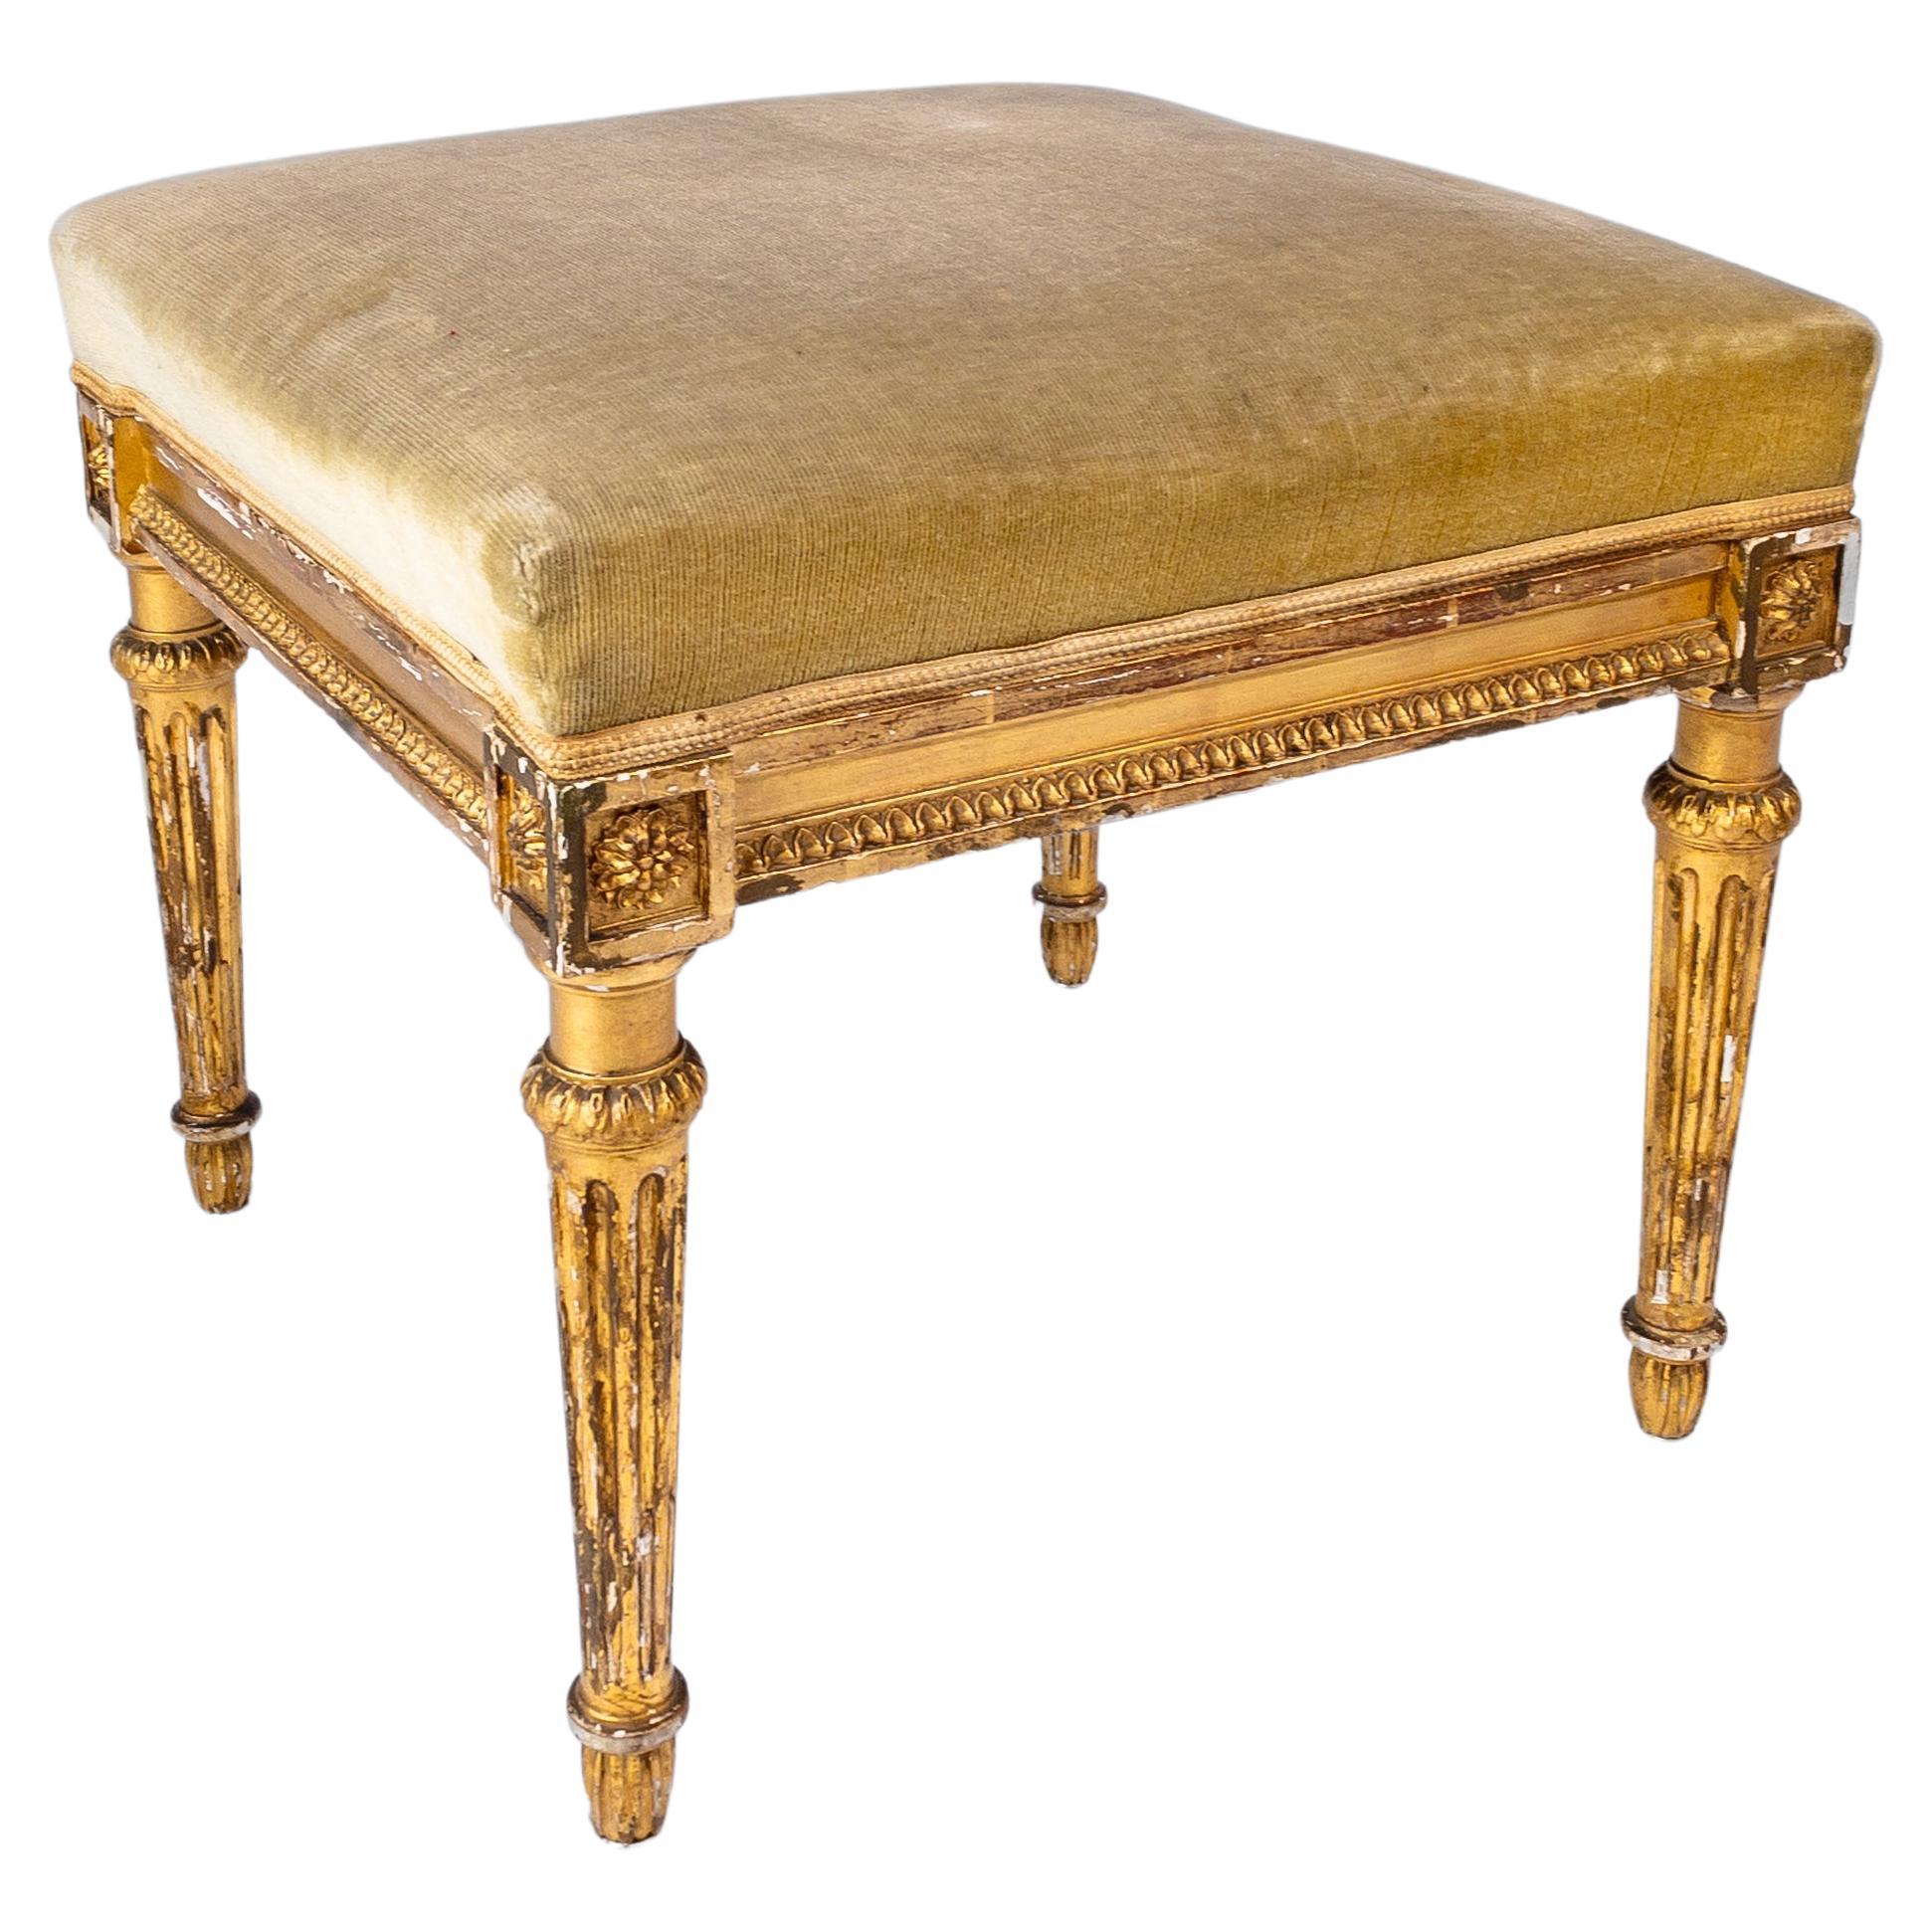 Tabouret doré de style Louis XVI français du 19ème siècle